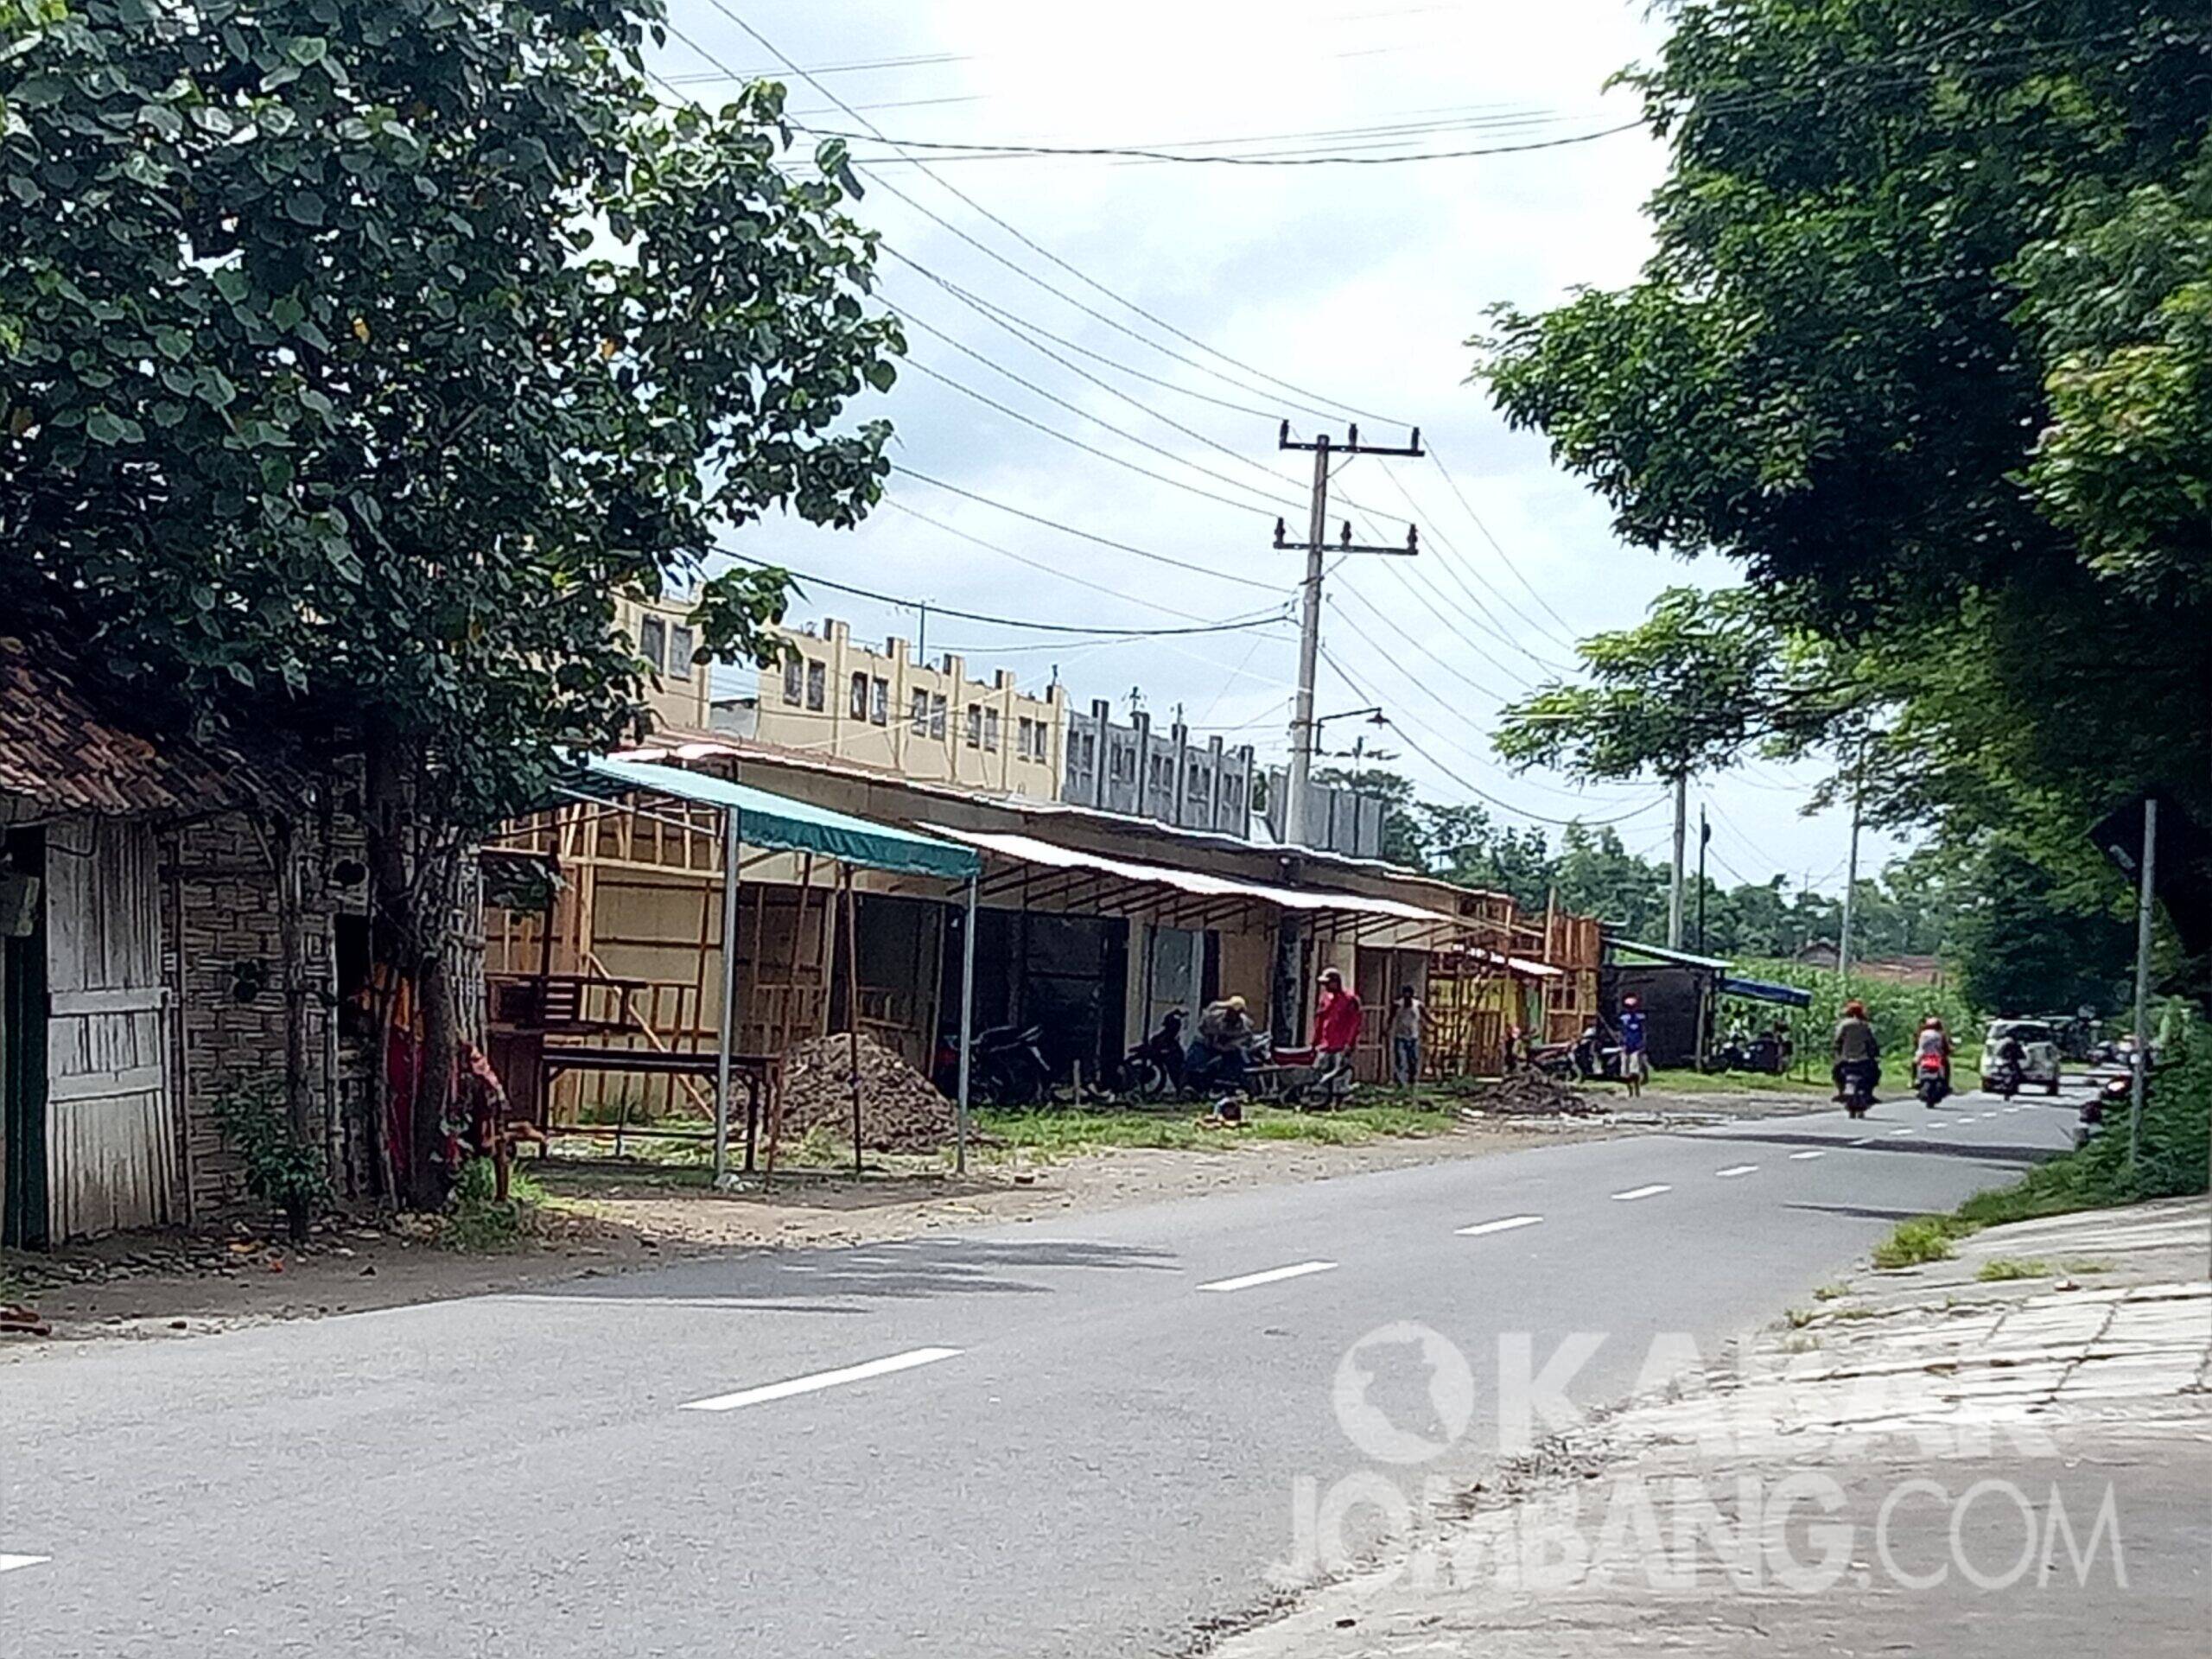 Ruko yang ditutupi dengan bangunan lapak dari kayu di Desa Menganto, Kecamatan Mojowarno, Kabupaten Jombang. KabarJombang.com/Diana Kusuma/